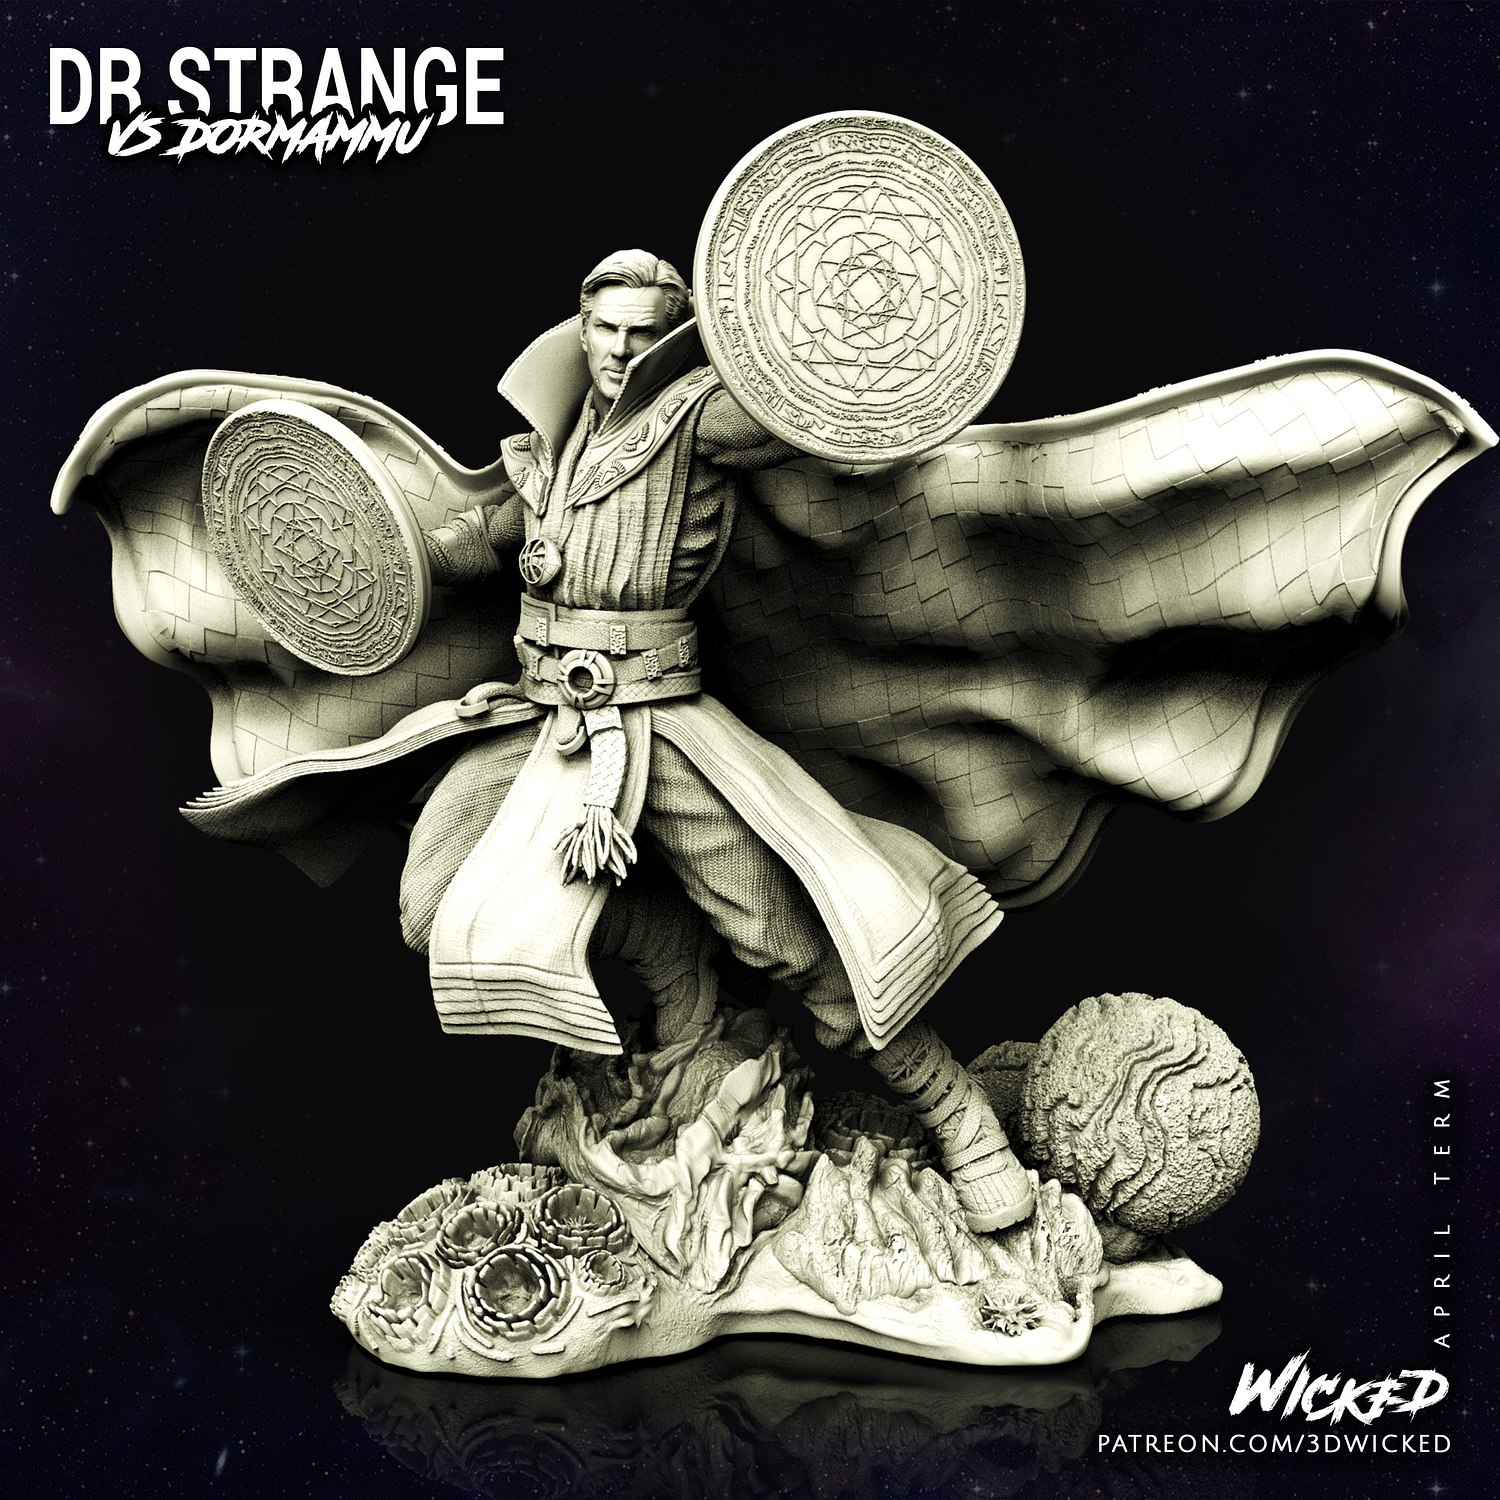 Doctor Strange from Marvel